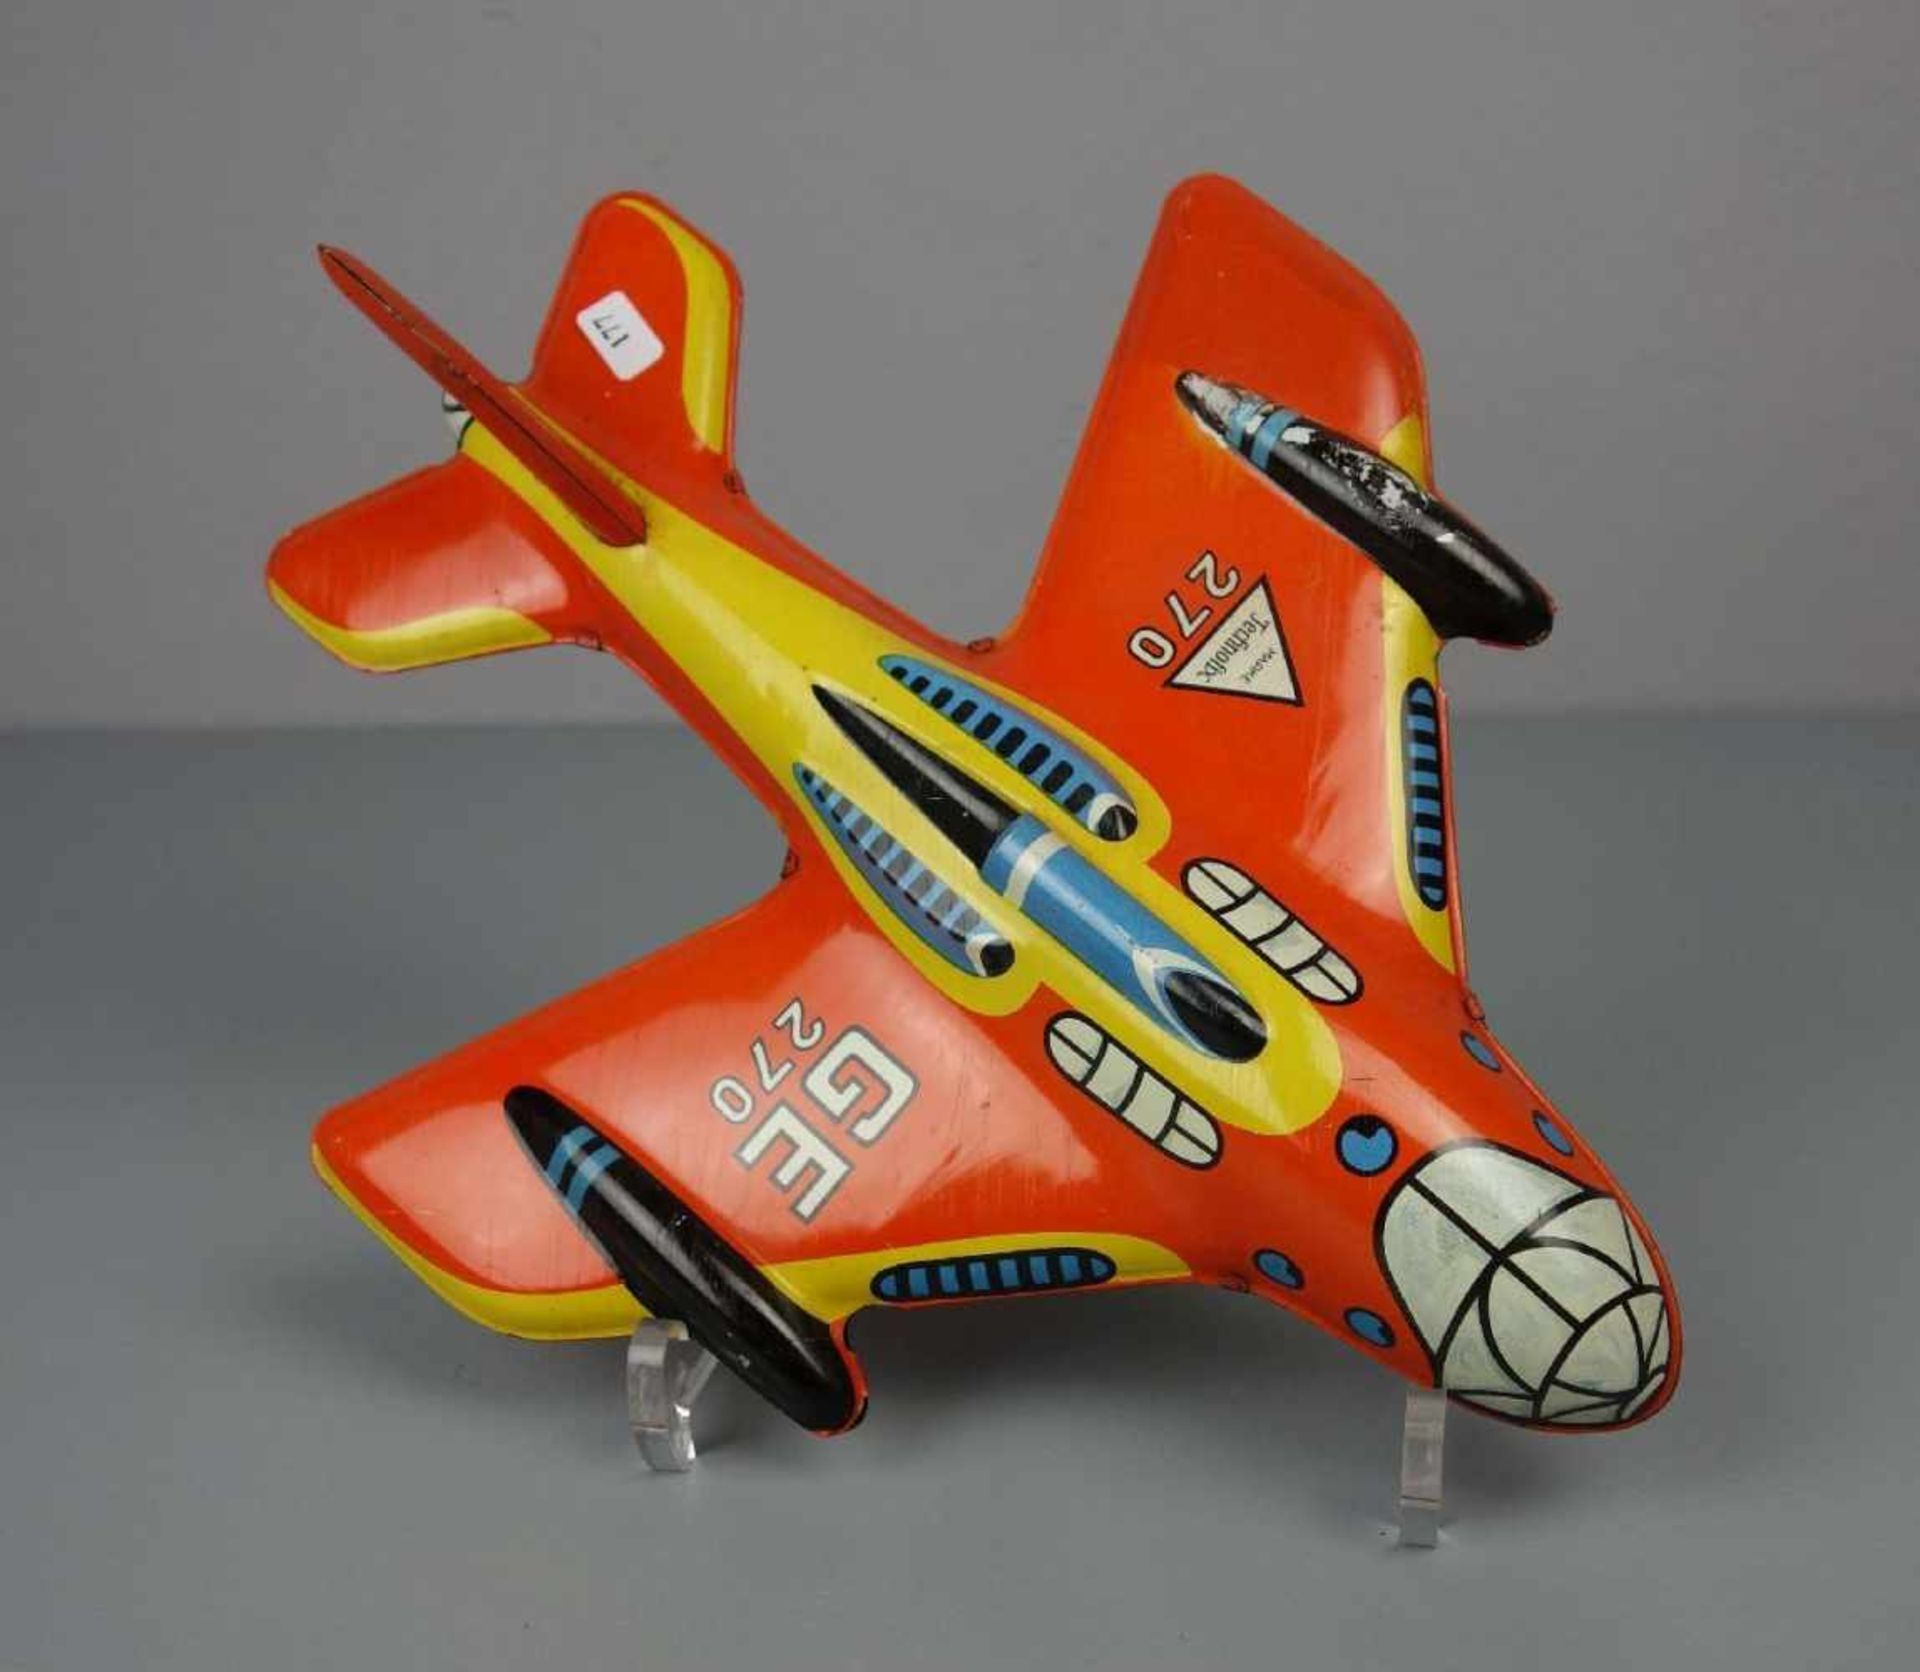 BLECHSPIELZEUG: TECHNOFIX FLUGZEUG / tin toy plane, Mitte 20. Jh., Manufaktur Gebrüder Einfalt - Image 3 of 4